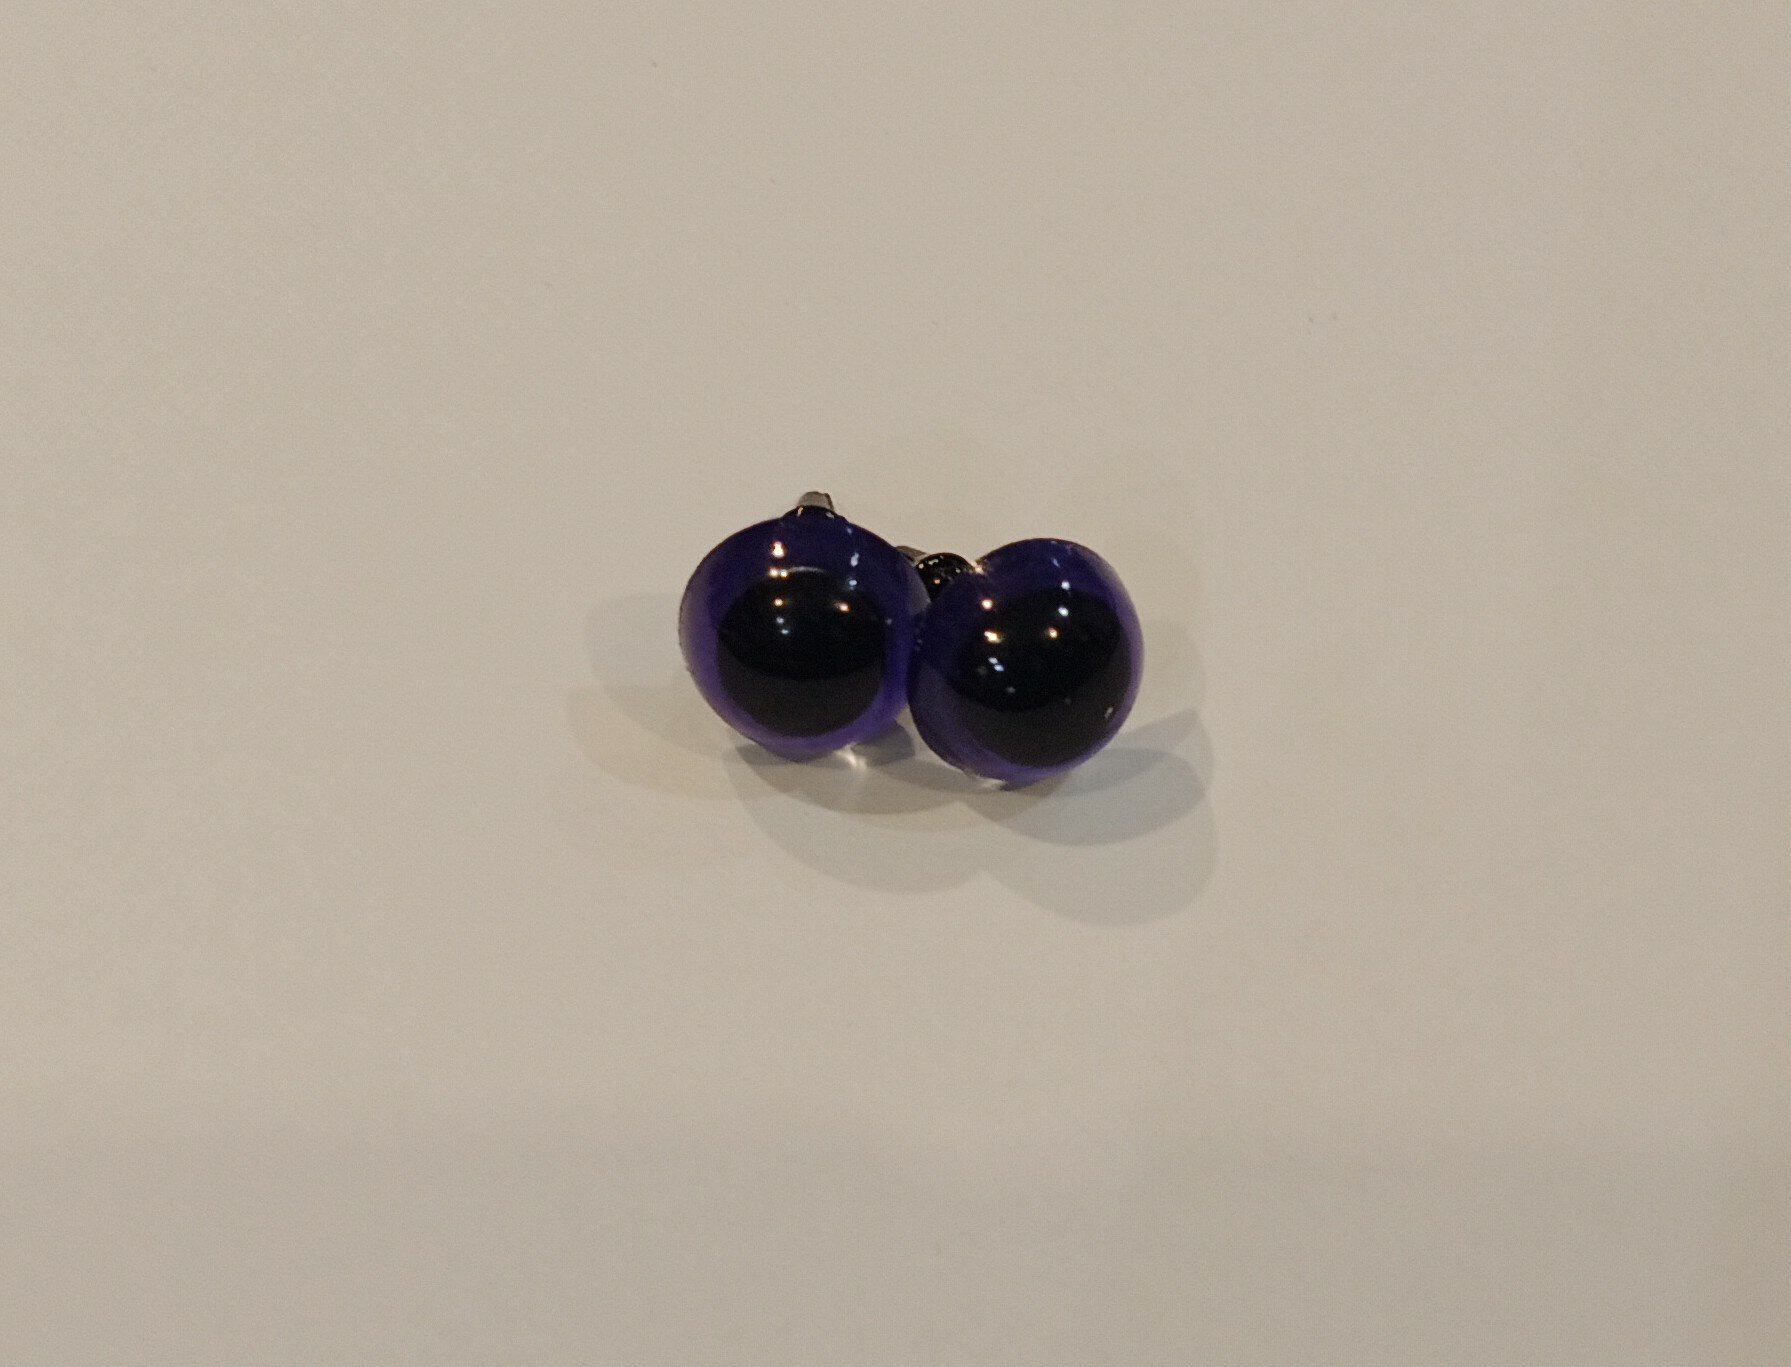 Глазки для игрушек винтовые, с фиксатором, диаметр 12 мм, набор 10 штук, цвет фиолетовый